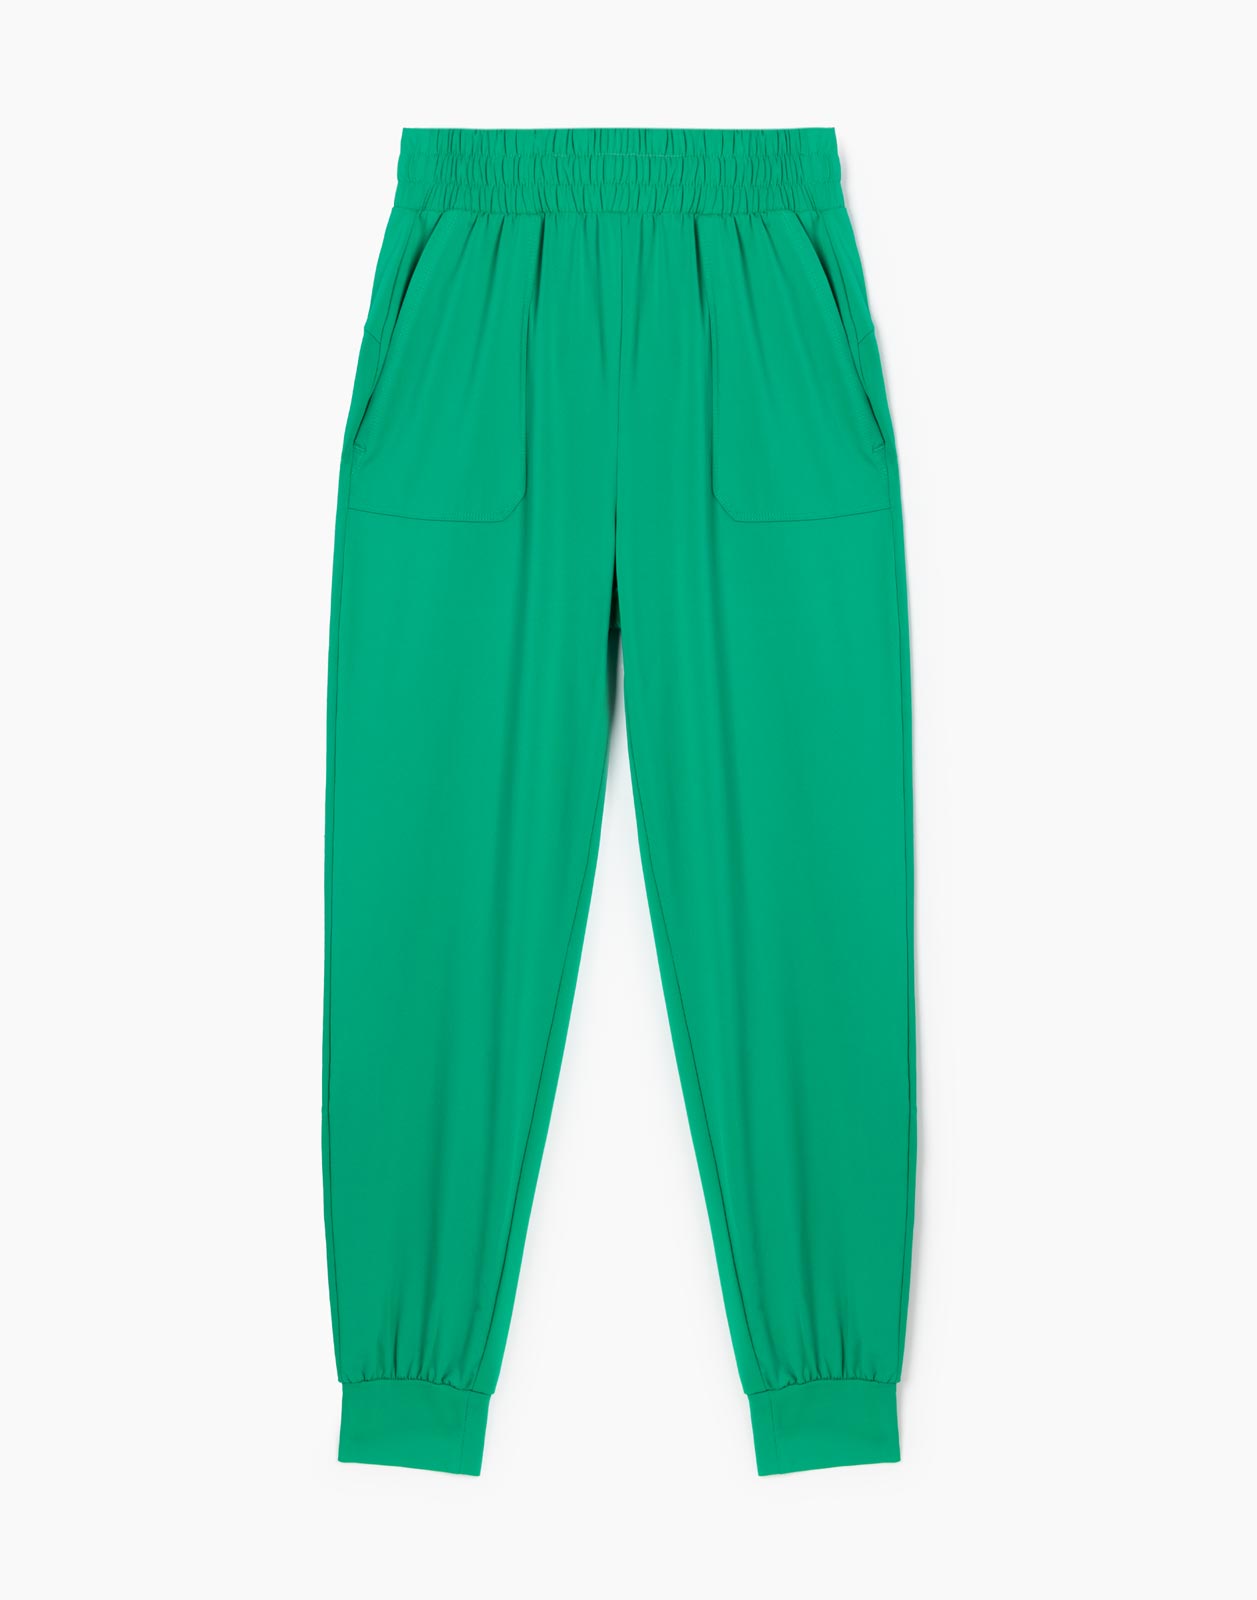 Зелёные спортивные брюки Jogger из микрофибры для девочки р.140